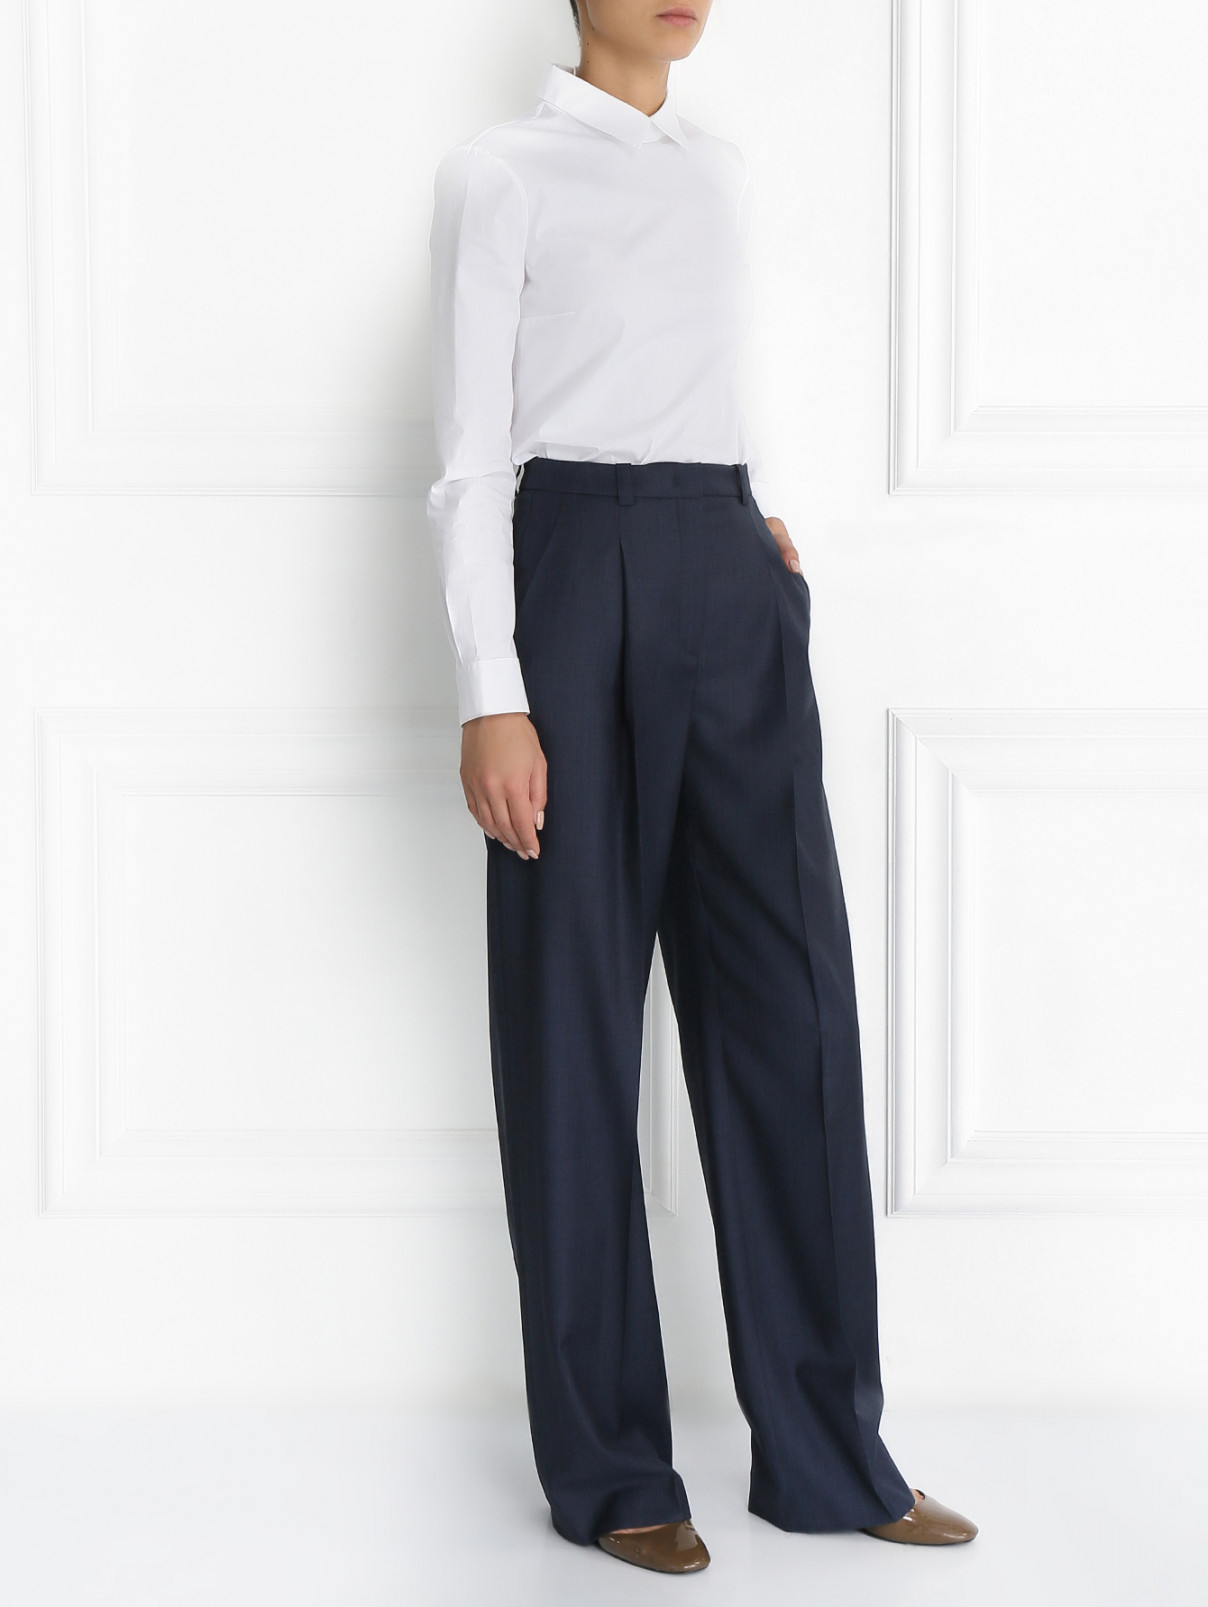 Шерстяные брюки с высокой посадкой Jil Sander Navy  –  Модель Общий вид  – Цвет:  Синий